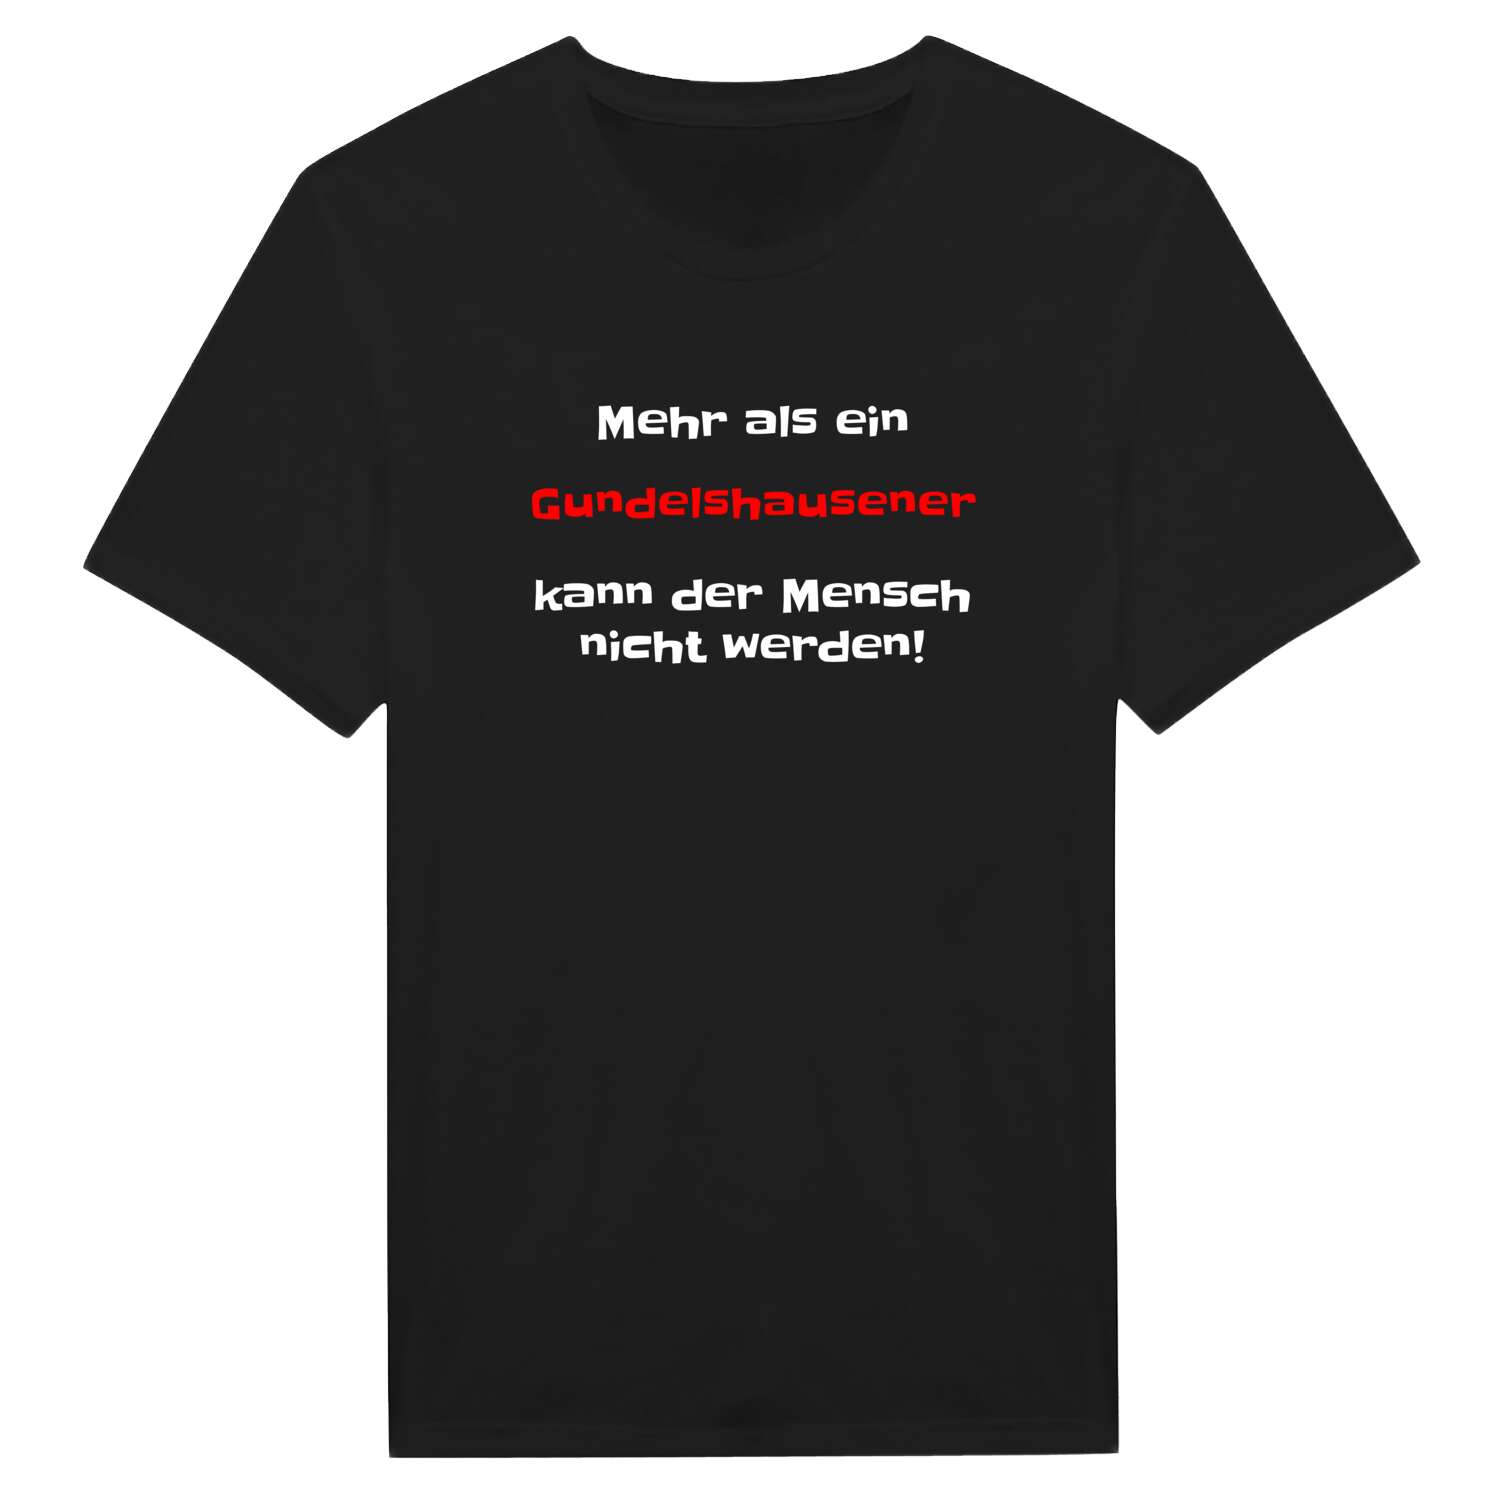 Gundelshausen T-Shirt »Mehr als ein«